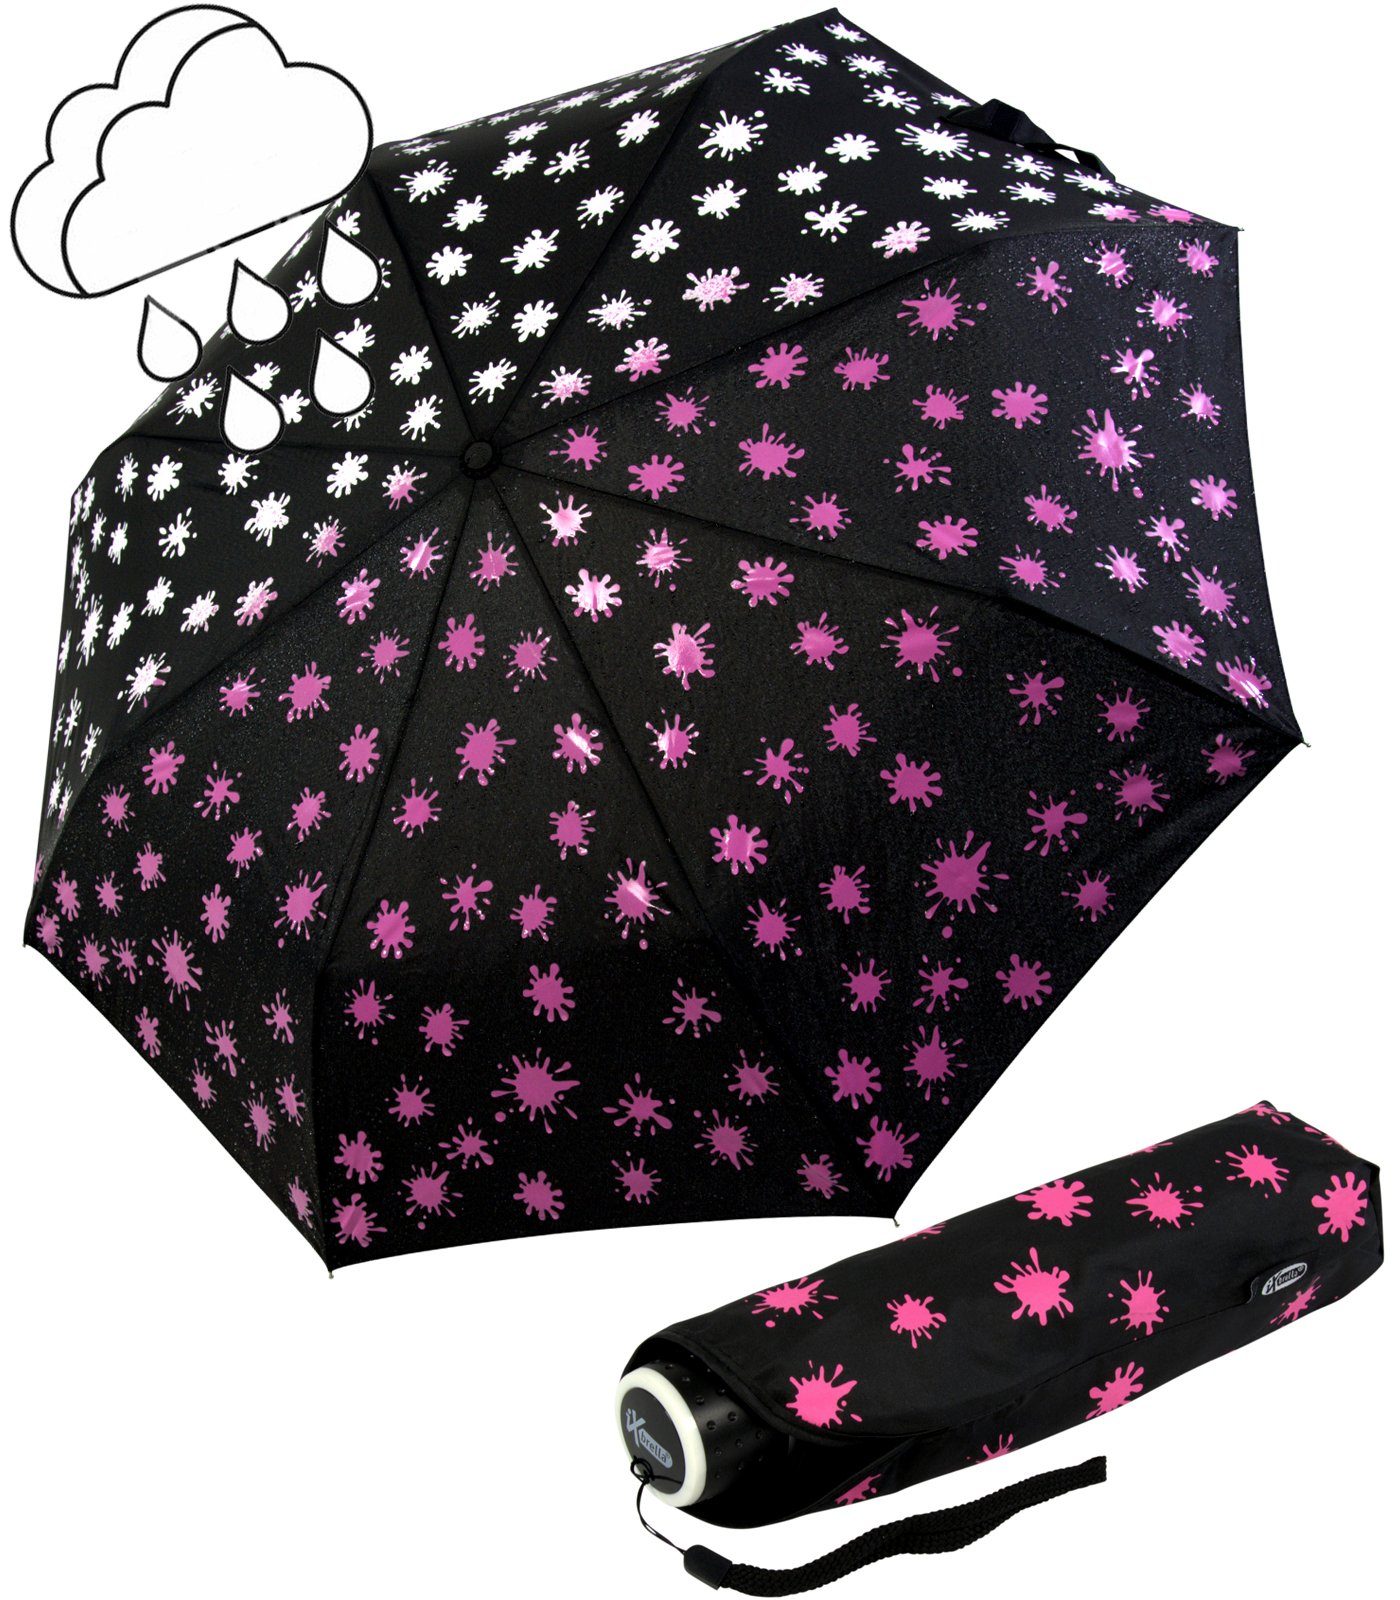 iX-brella Taschenregenschirm Mini Ultra Light - mit großem Dach - extra leicht, Farbänderung bei Nässe - Farbkleckse neon-pink schwarz-weiß-neonpink